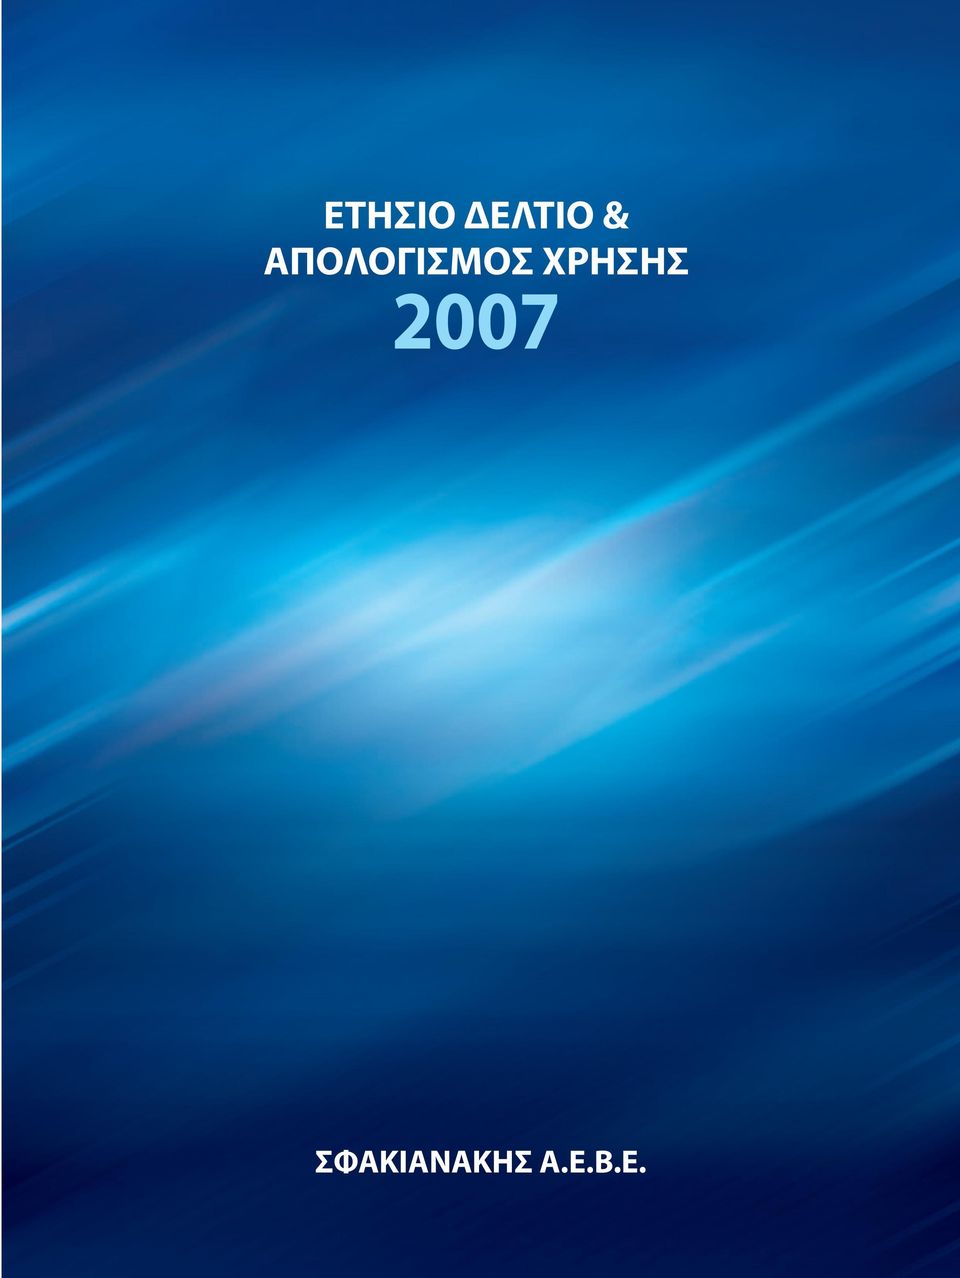 ΧΡΗΣΗΣ 2007